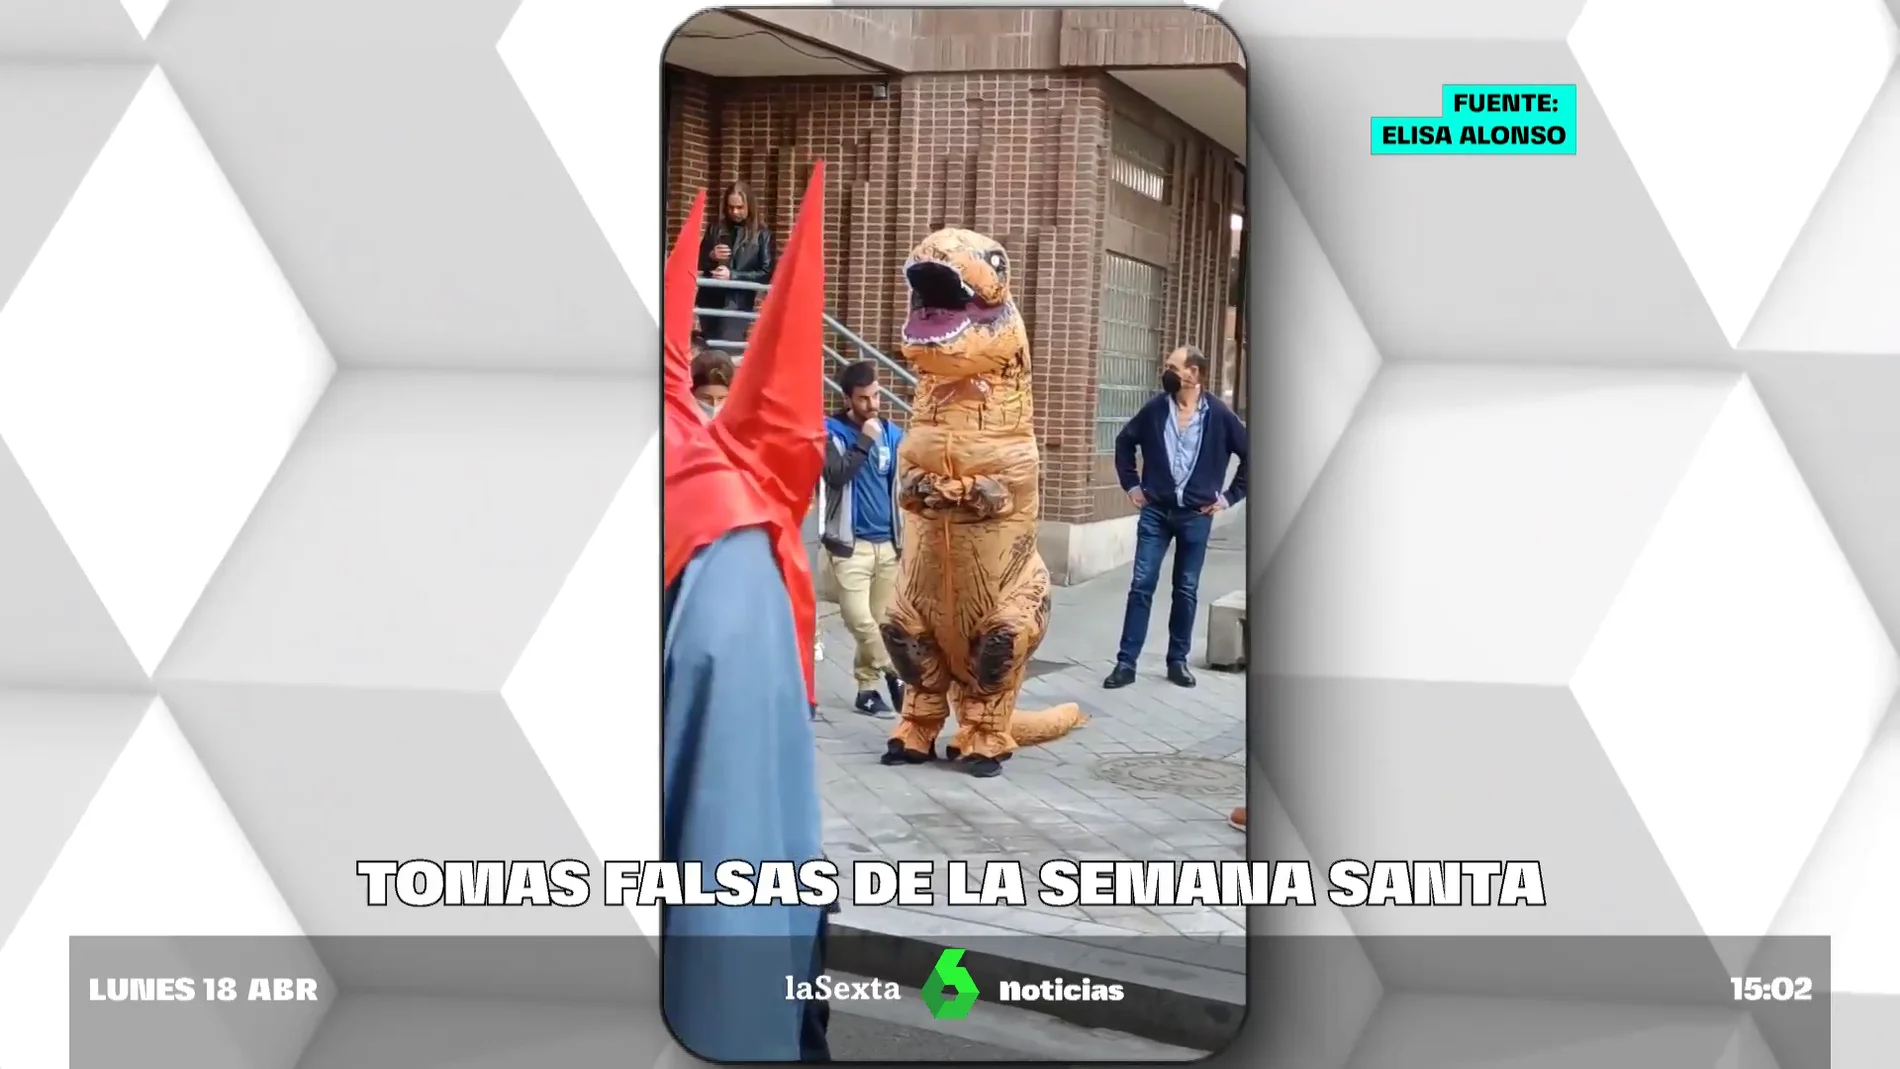 Una persona disfrazada de dinosaurio causa revuelo entre los asistentes a  la Semana Santa de Valladolid